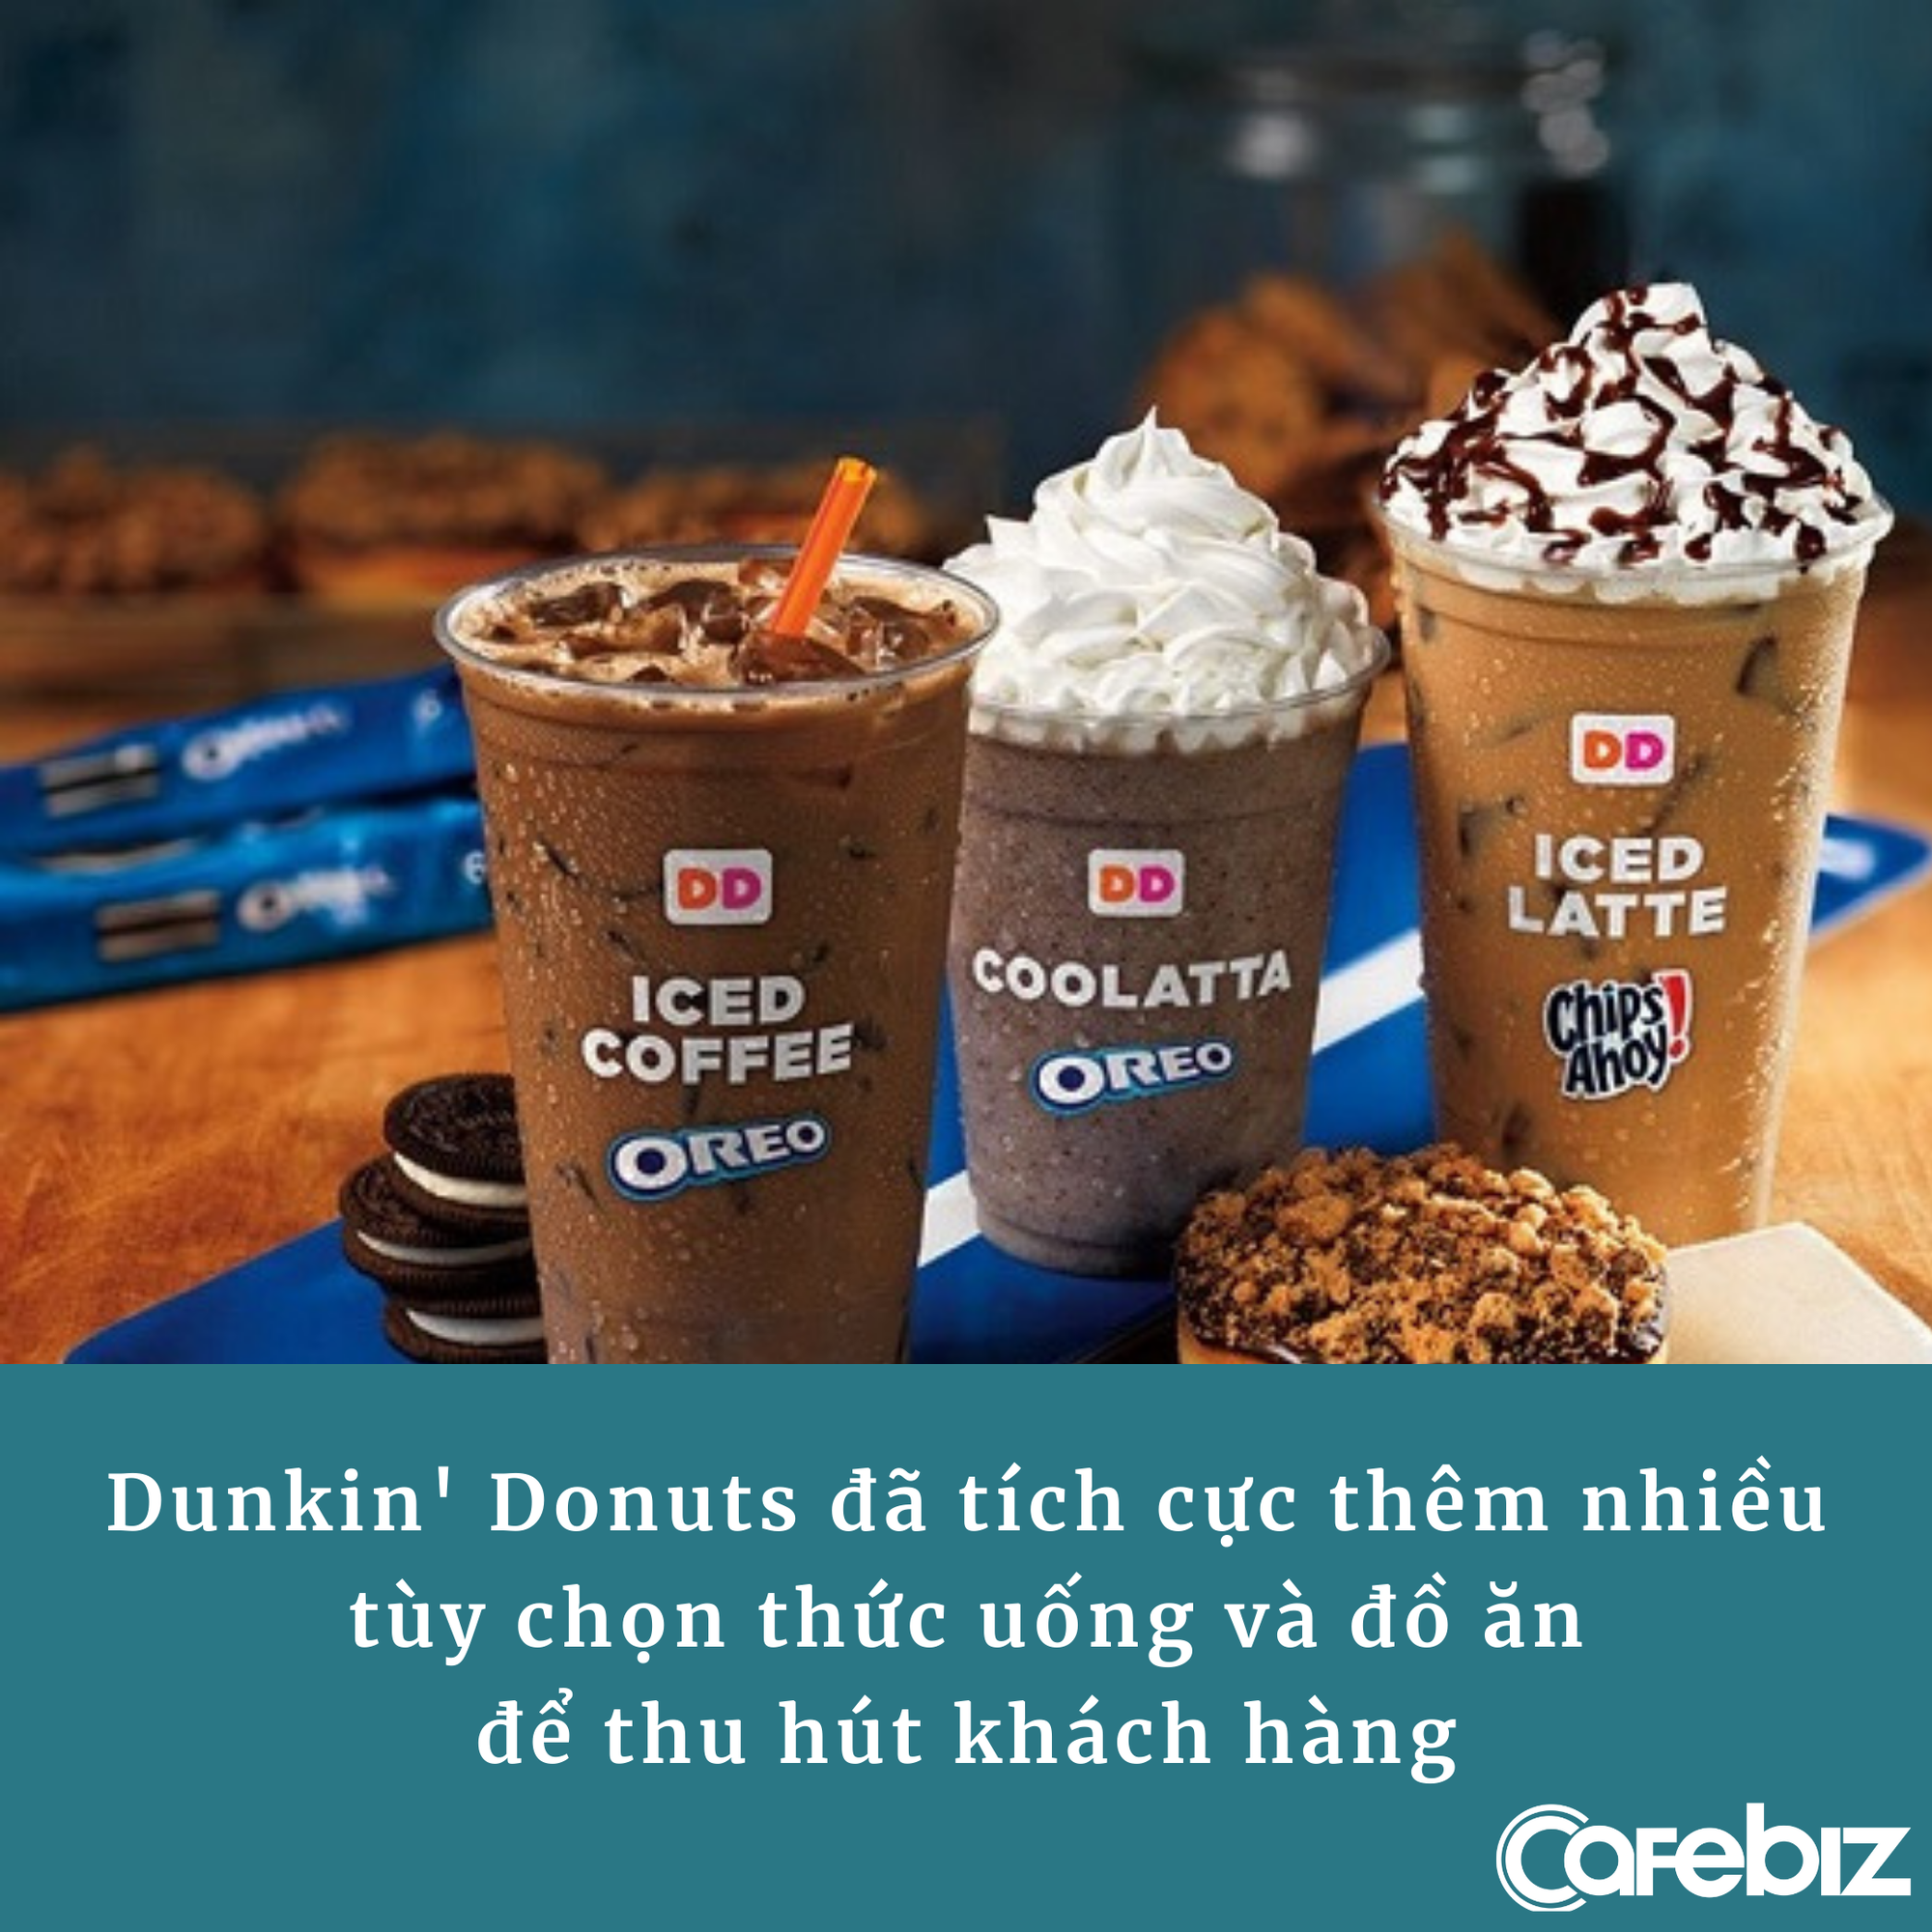 [Bài 23/9] Đại chiến Starbucks vs Dunkin’ Donuts: 1 hãng ‘sinh sau đẻ muộn’ nhưng vượt mặt đàn anh, cả 2 làm marketing không quên cà khịa nhau cực ‘khét’ - Ảnh 3.